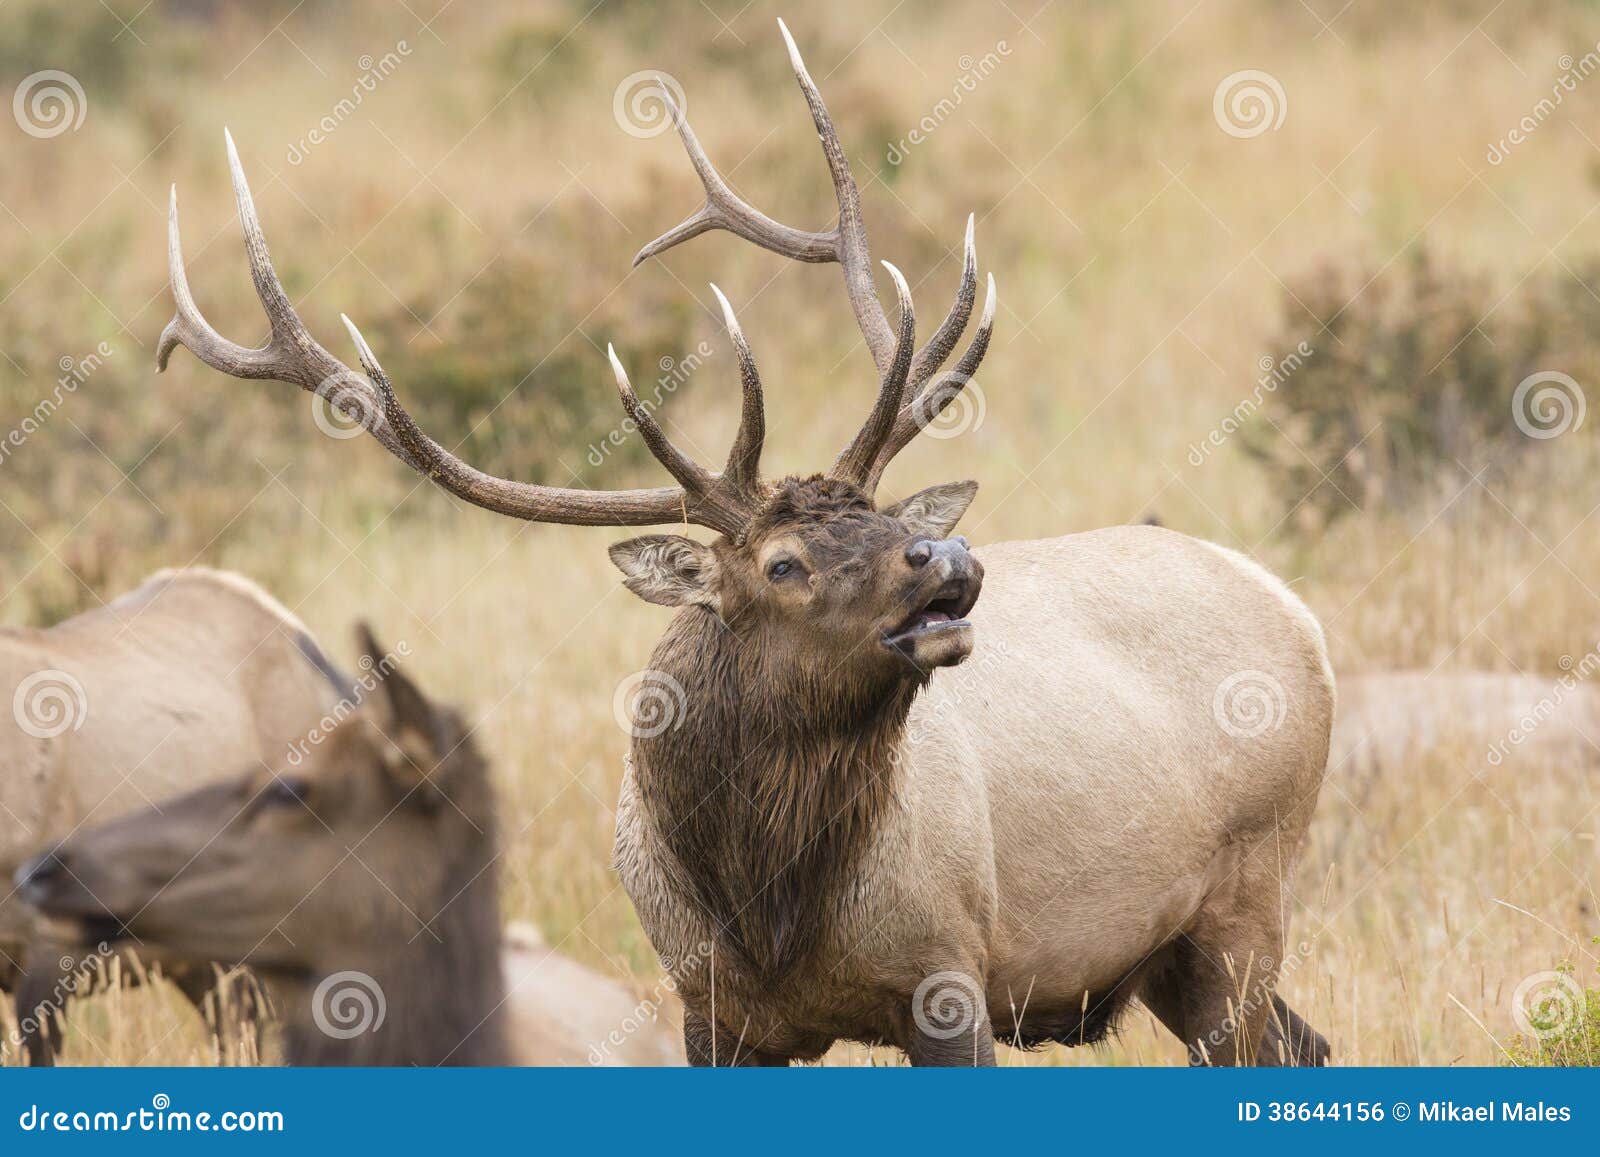 bull elk bugling for dominance